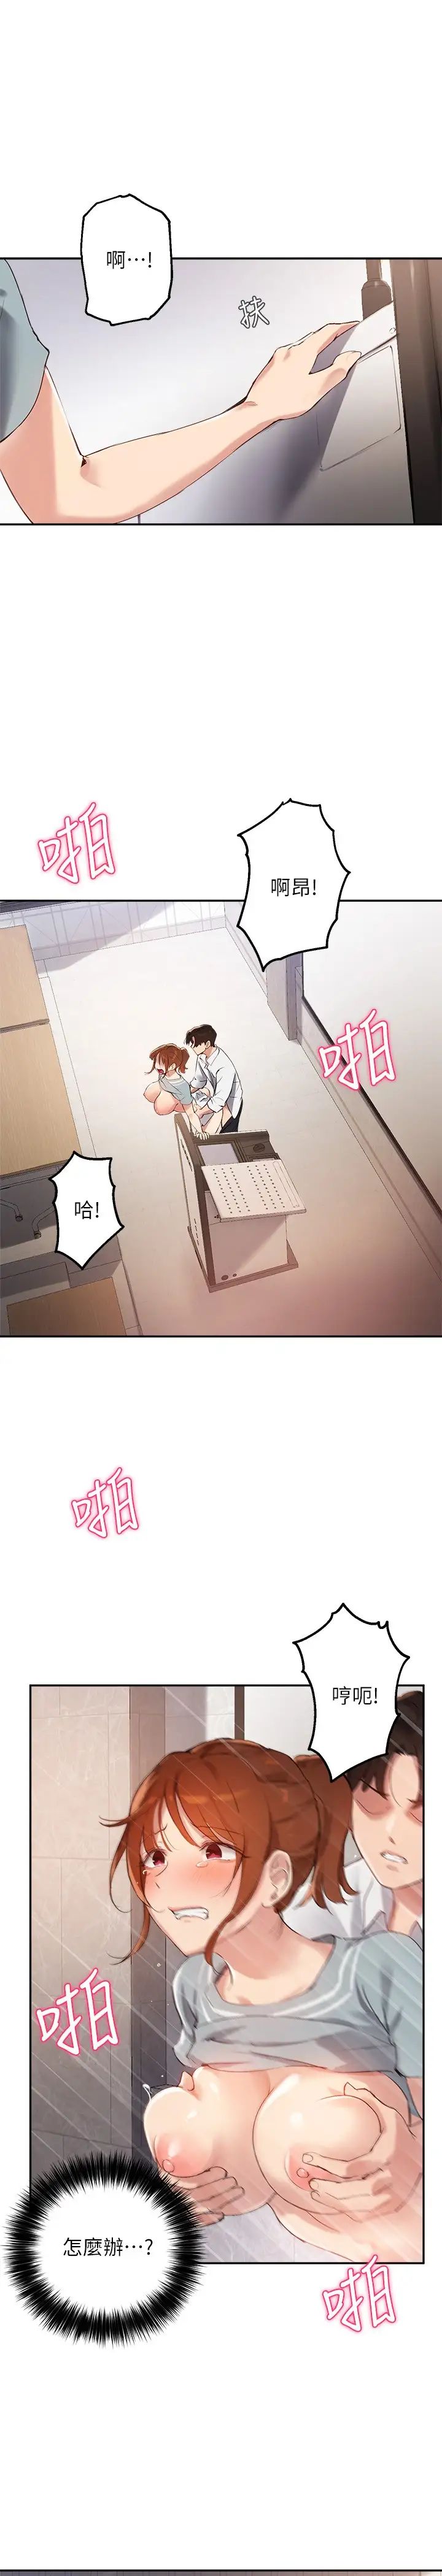 韩国污漫画 指導女大生 第28话既羞耻又舒服的快感! 3